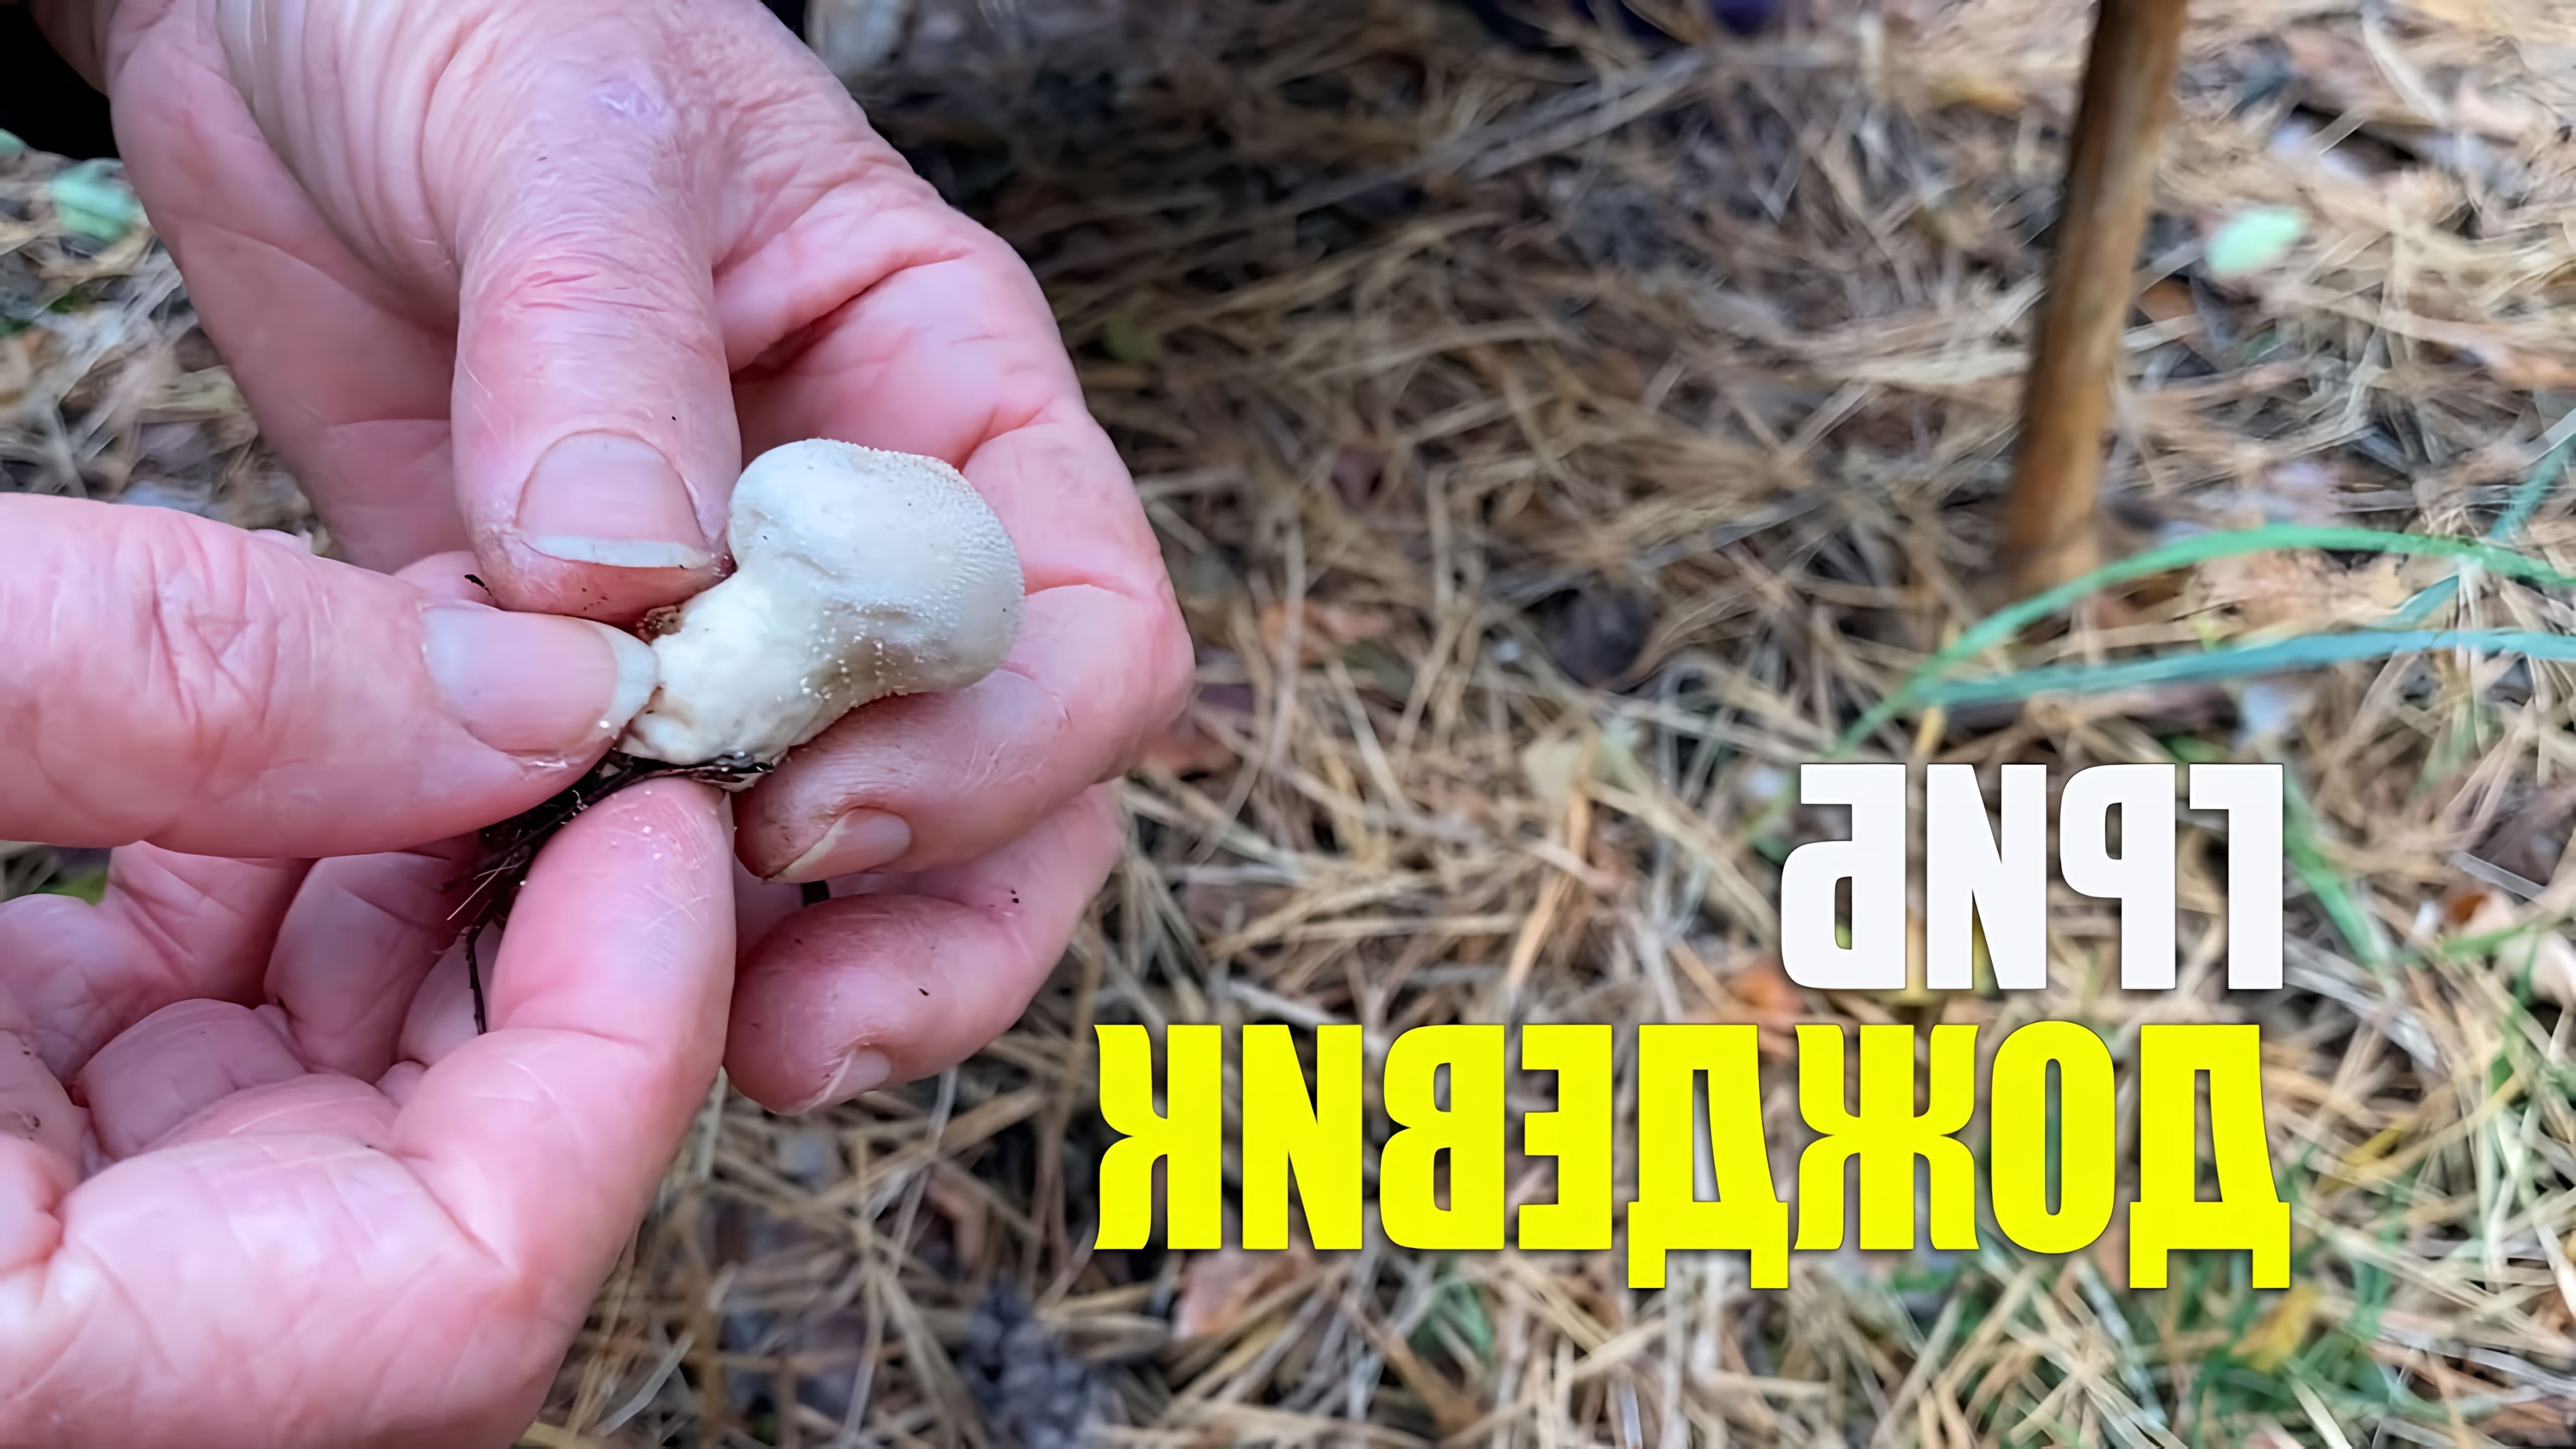 В данном видео-ролике будет представлен обзор на гриб Дождевик Съедобный, который является одним из наиболее распространенных и известных видов грибов